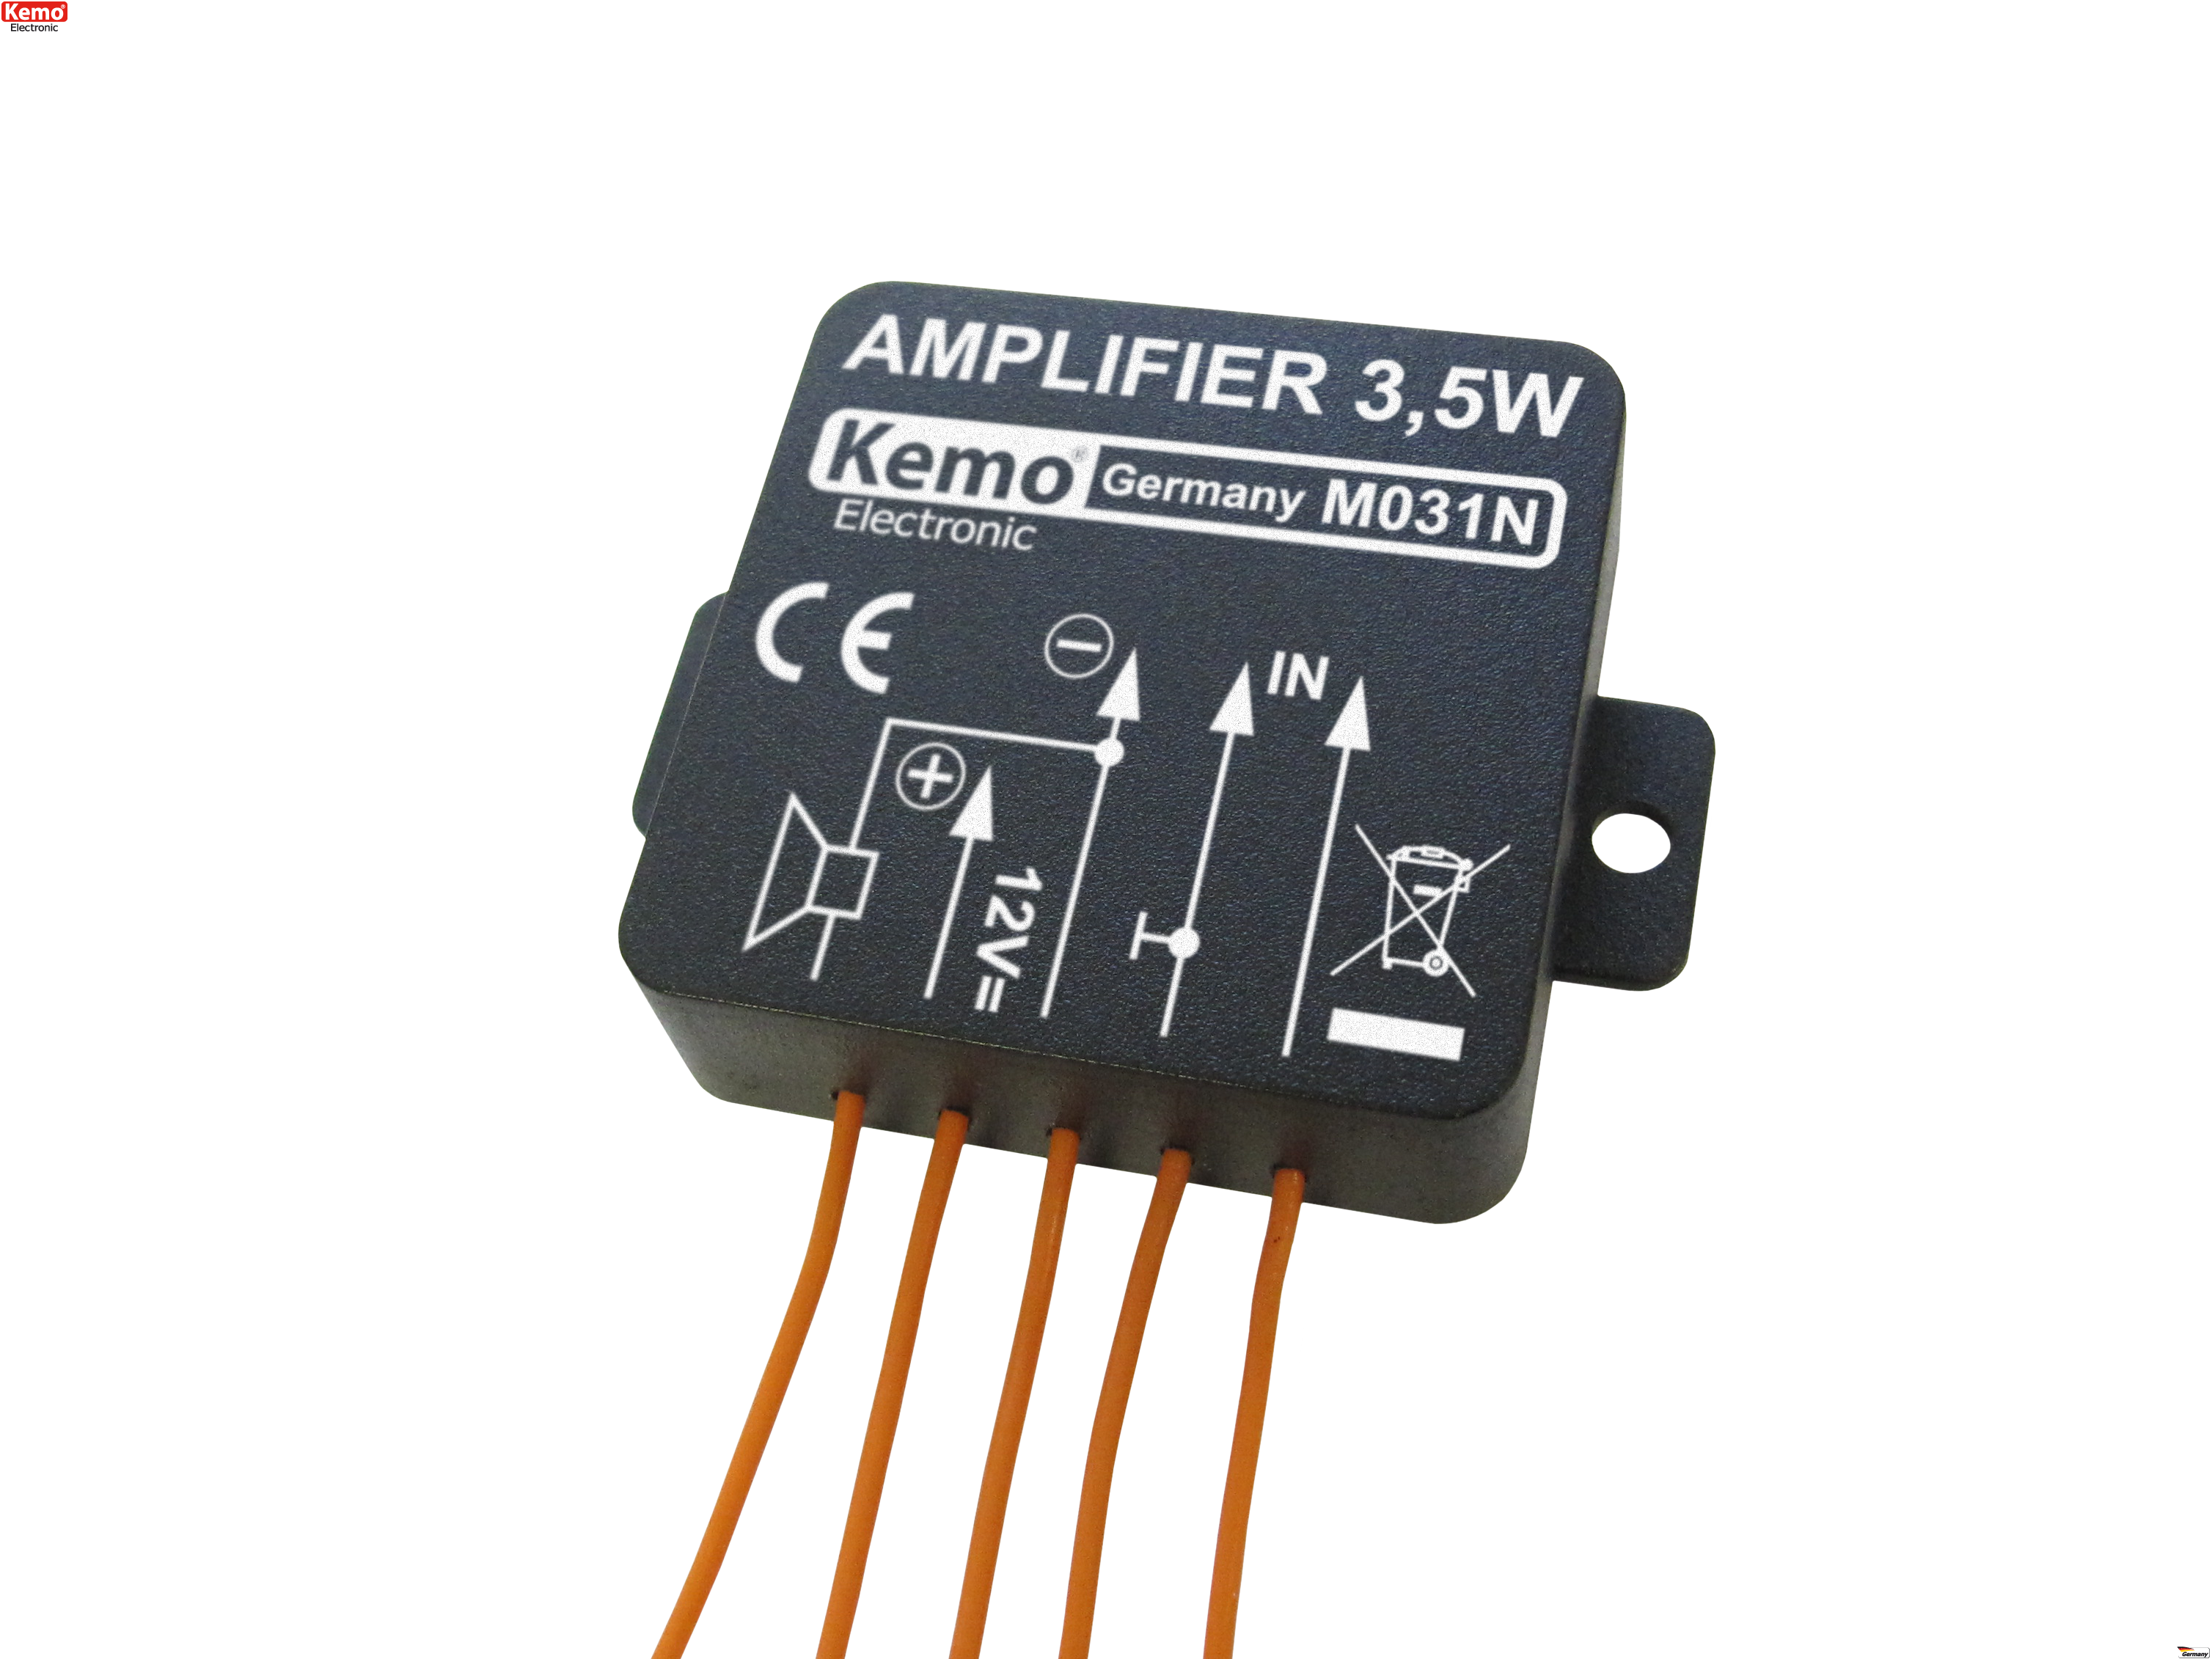 Kemo M031N 3.5W Universal Amplifier Module